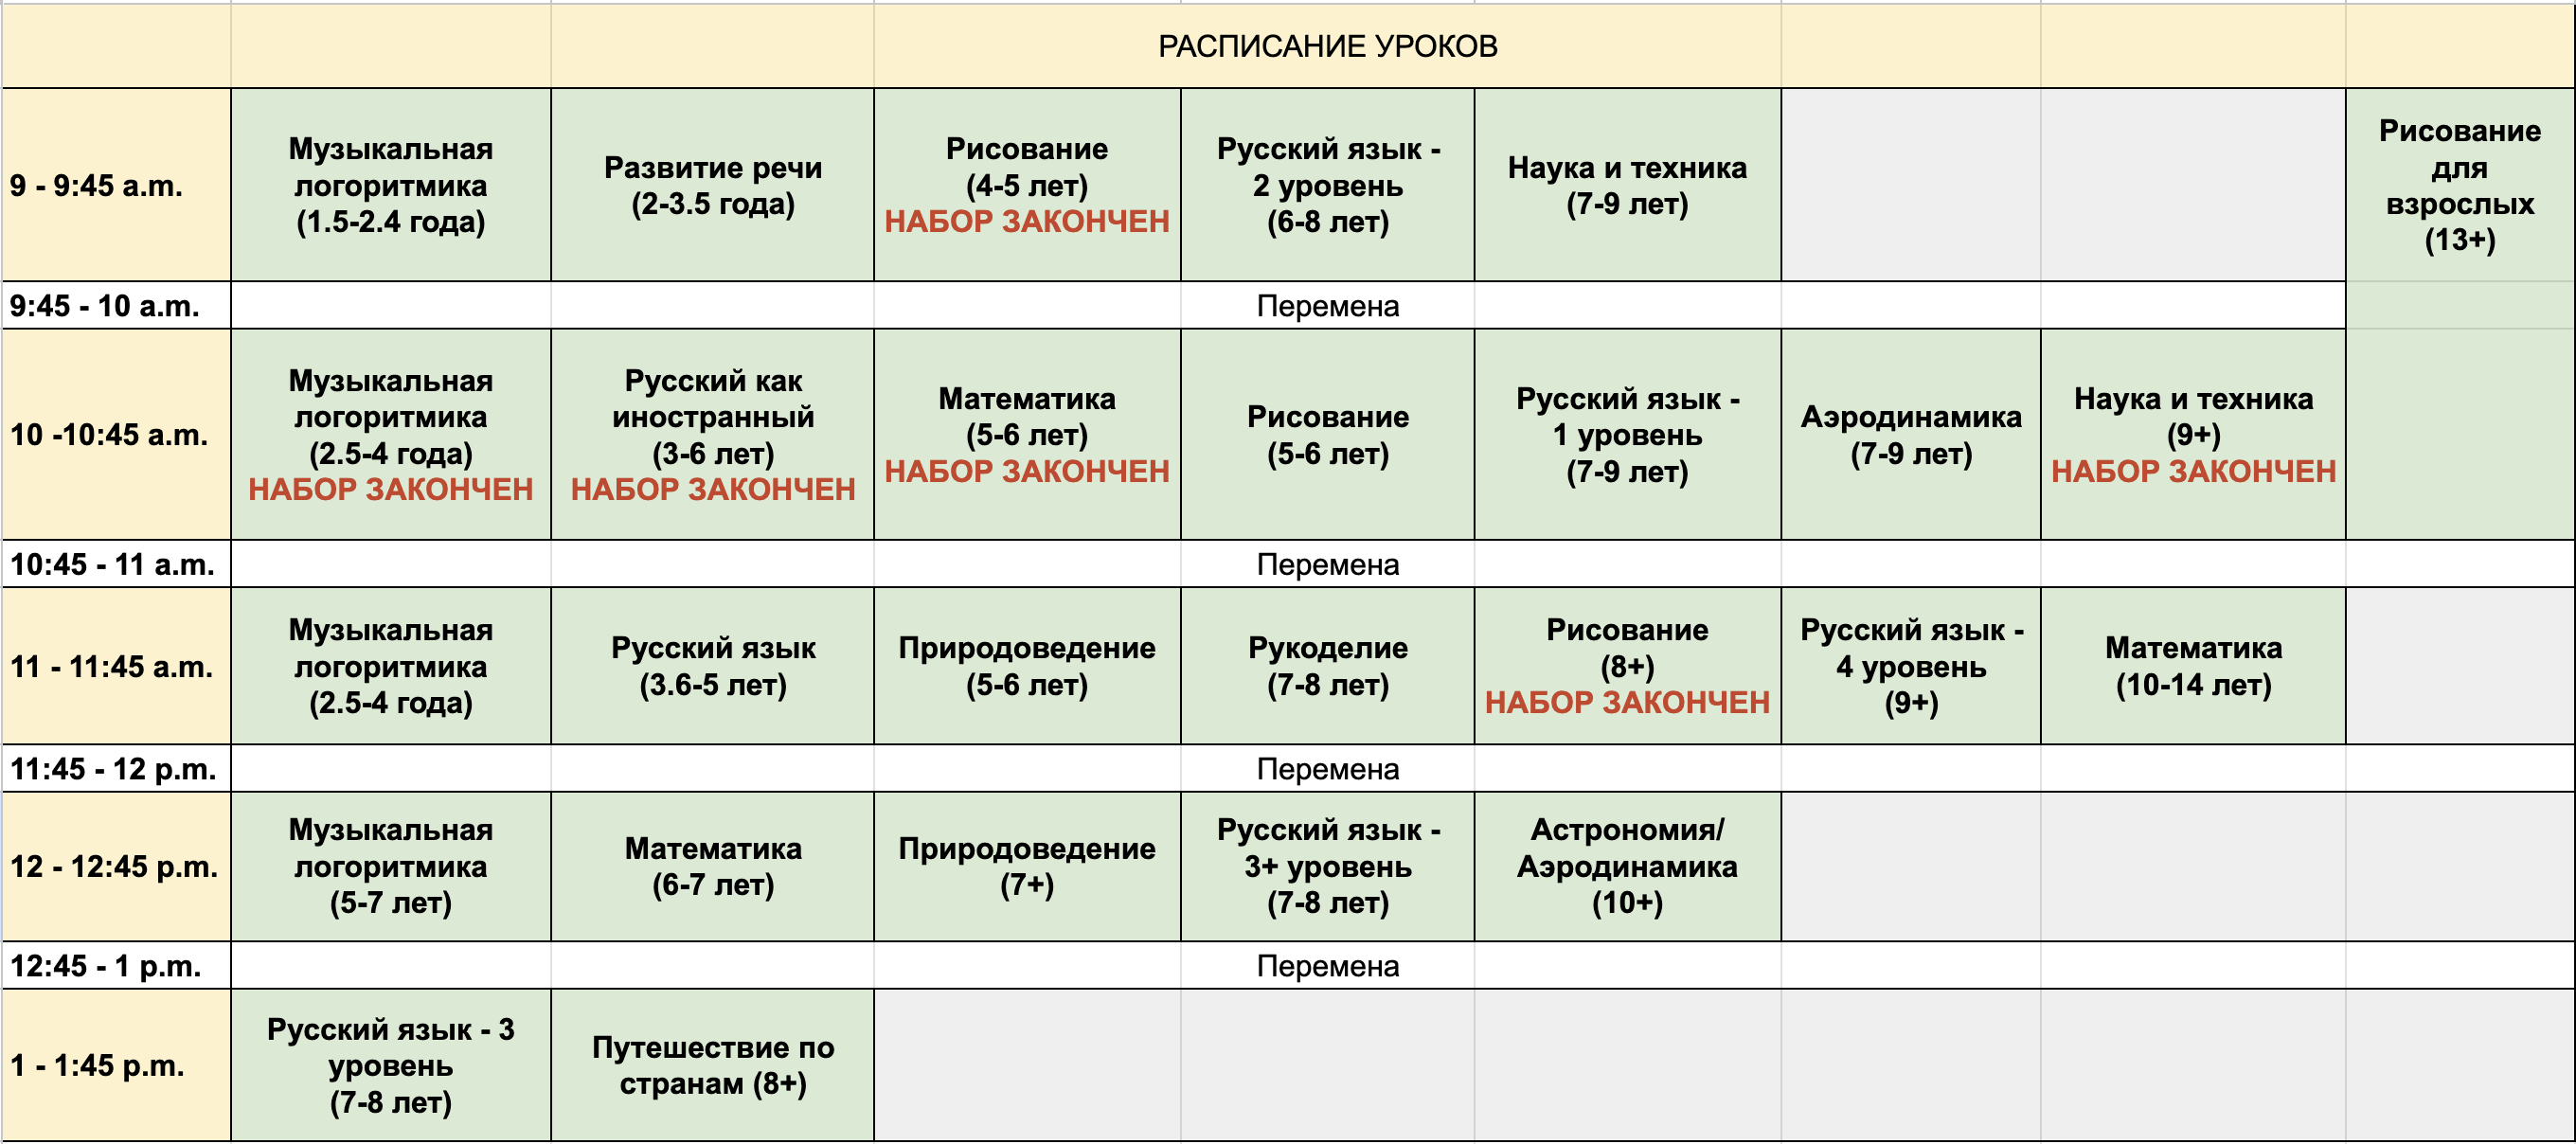 Schedule Russian